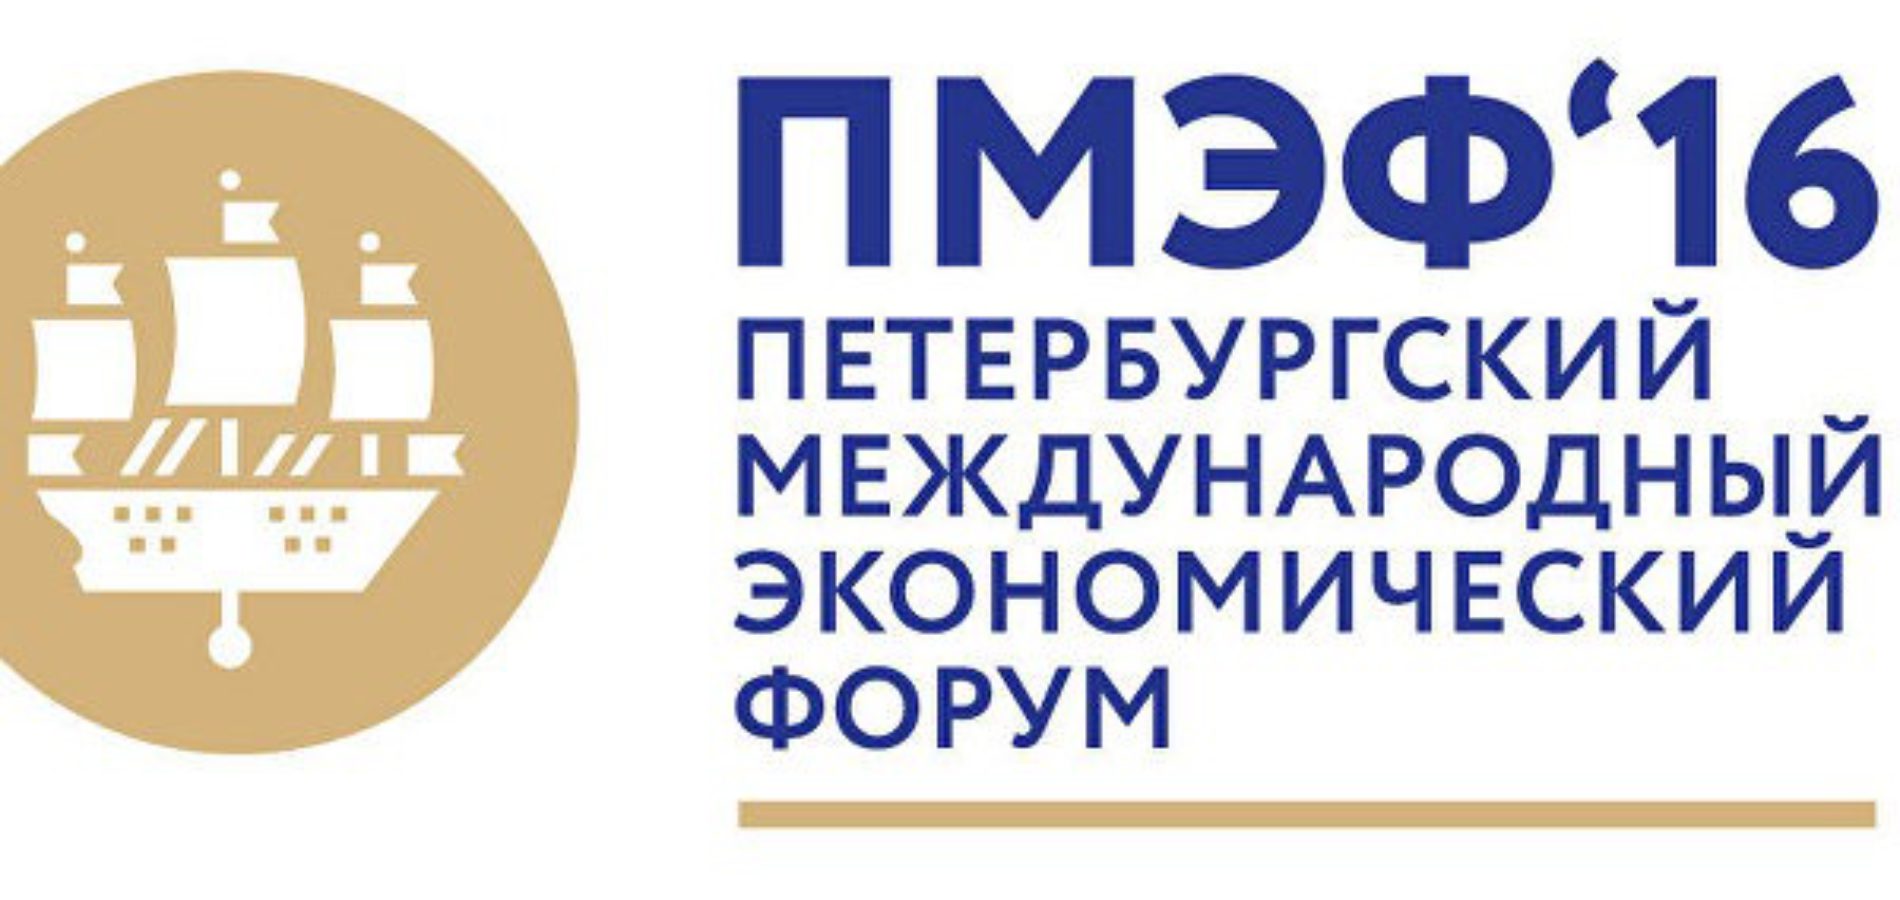 Уполномоченный по защите прав предпринимателей Борис Титов принимает участие в ПМЭФ-2016